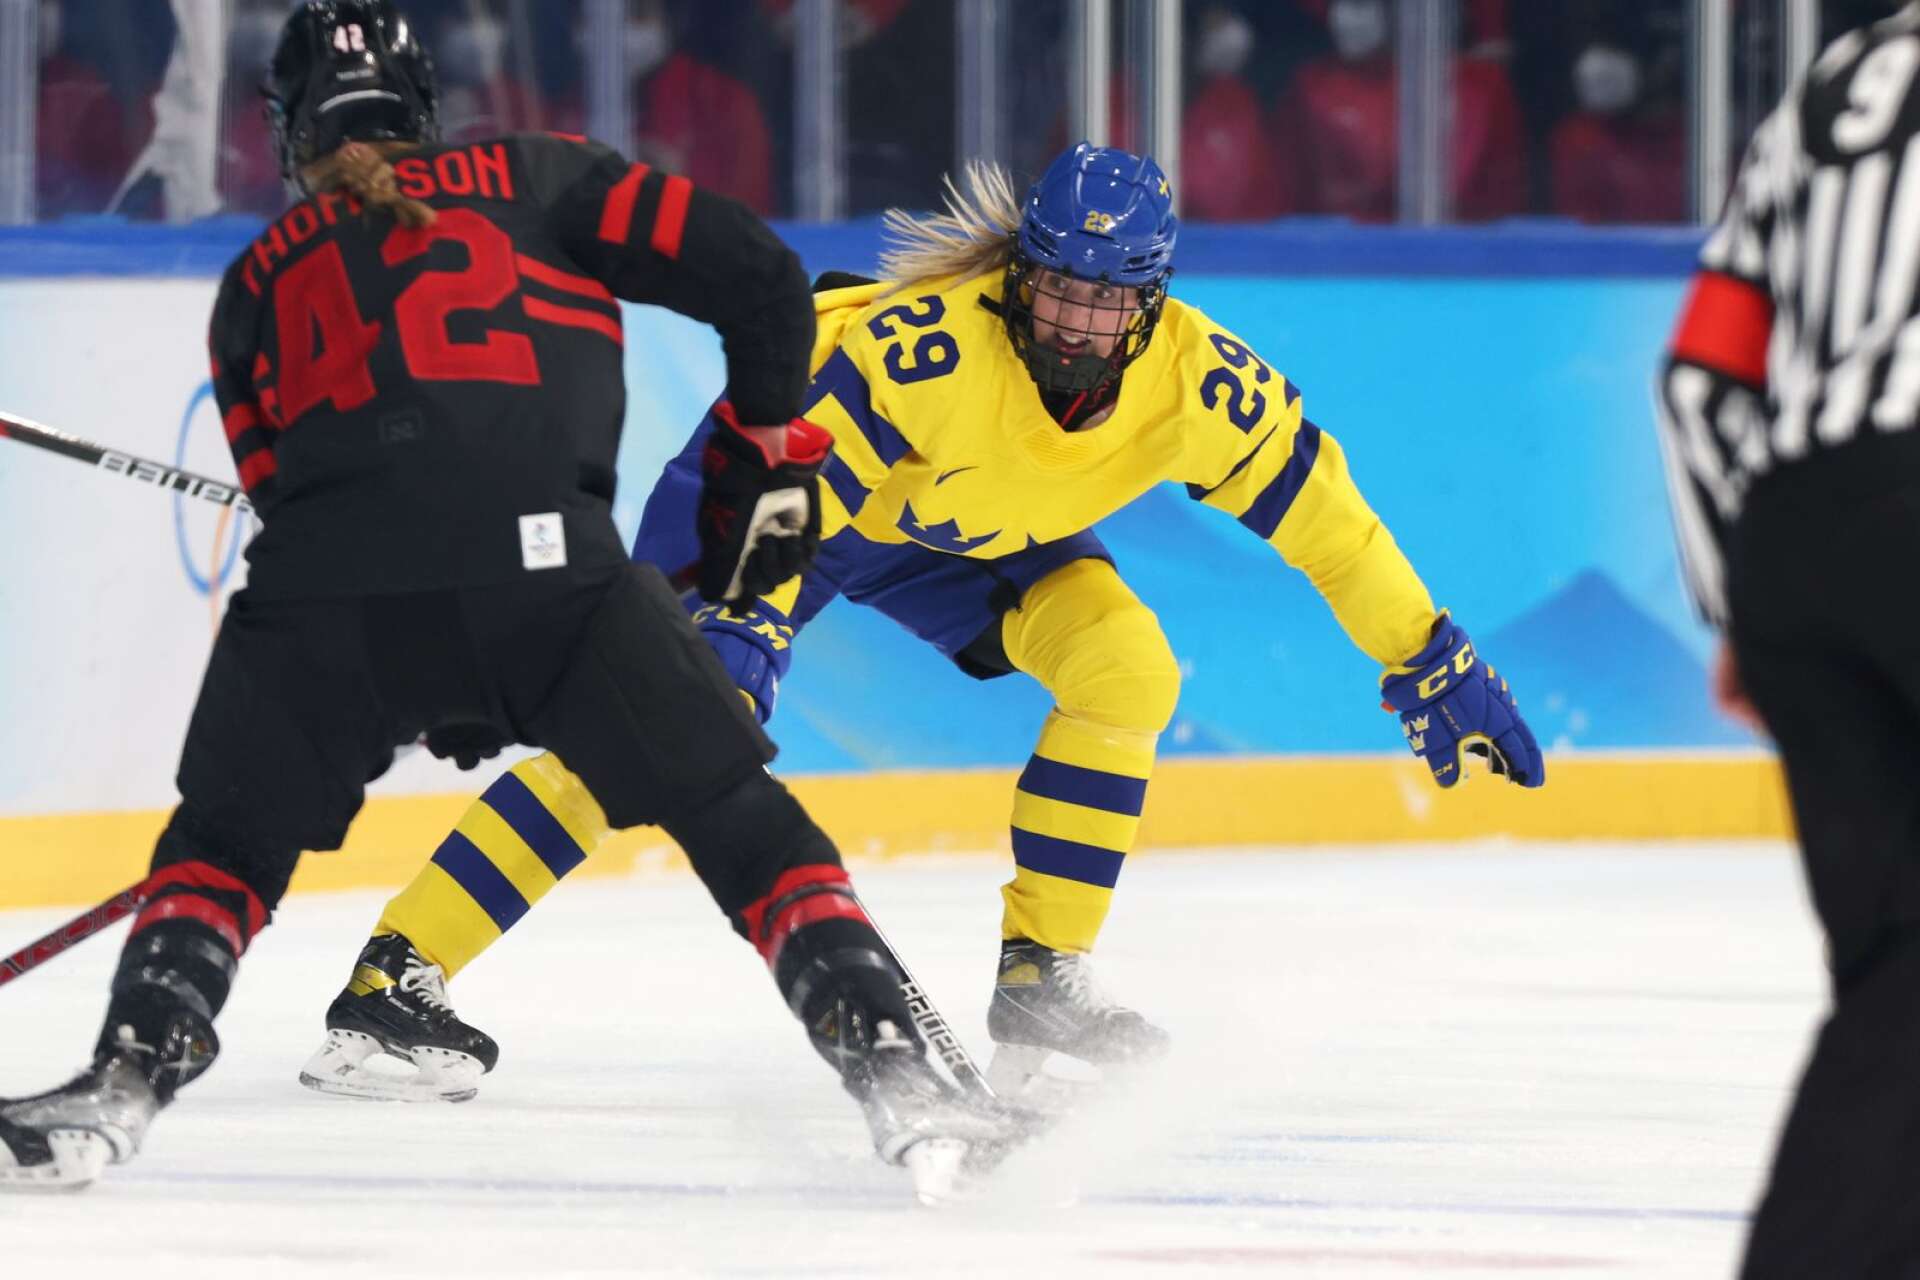 Sverige med Olivia Carlsson föll stort i OS-kvartsfinalen mot Kanada med Claire Thompson.